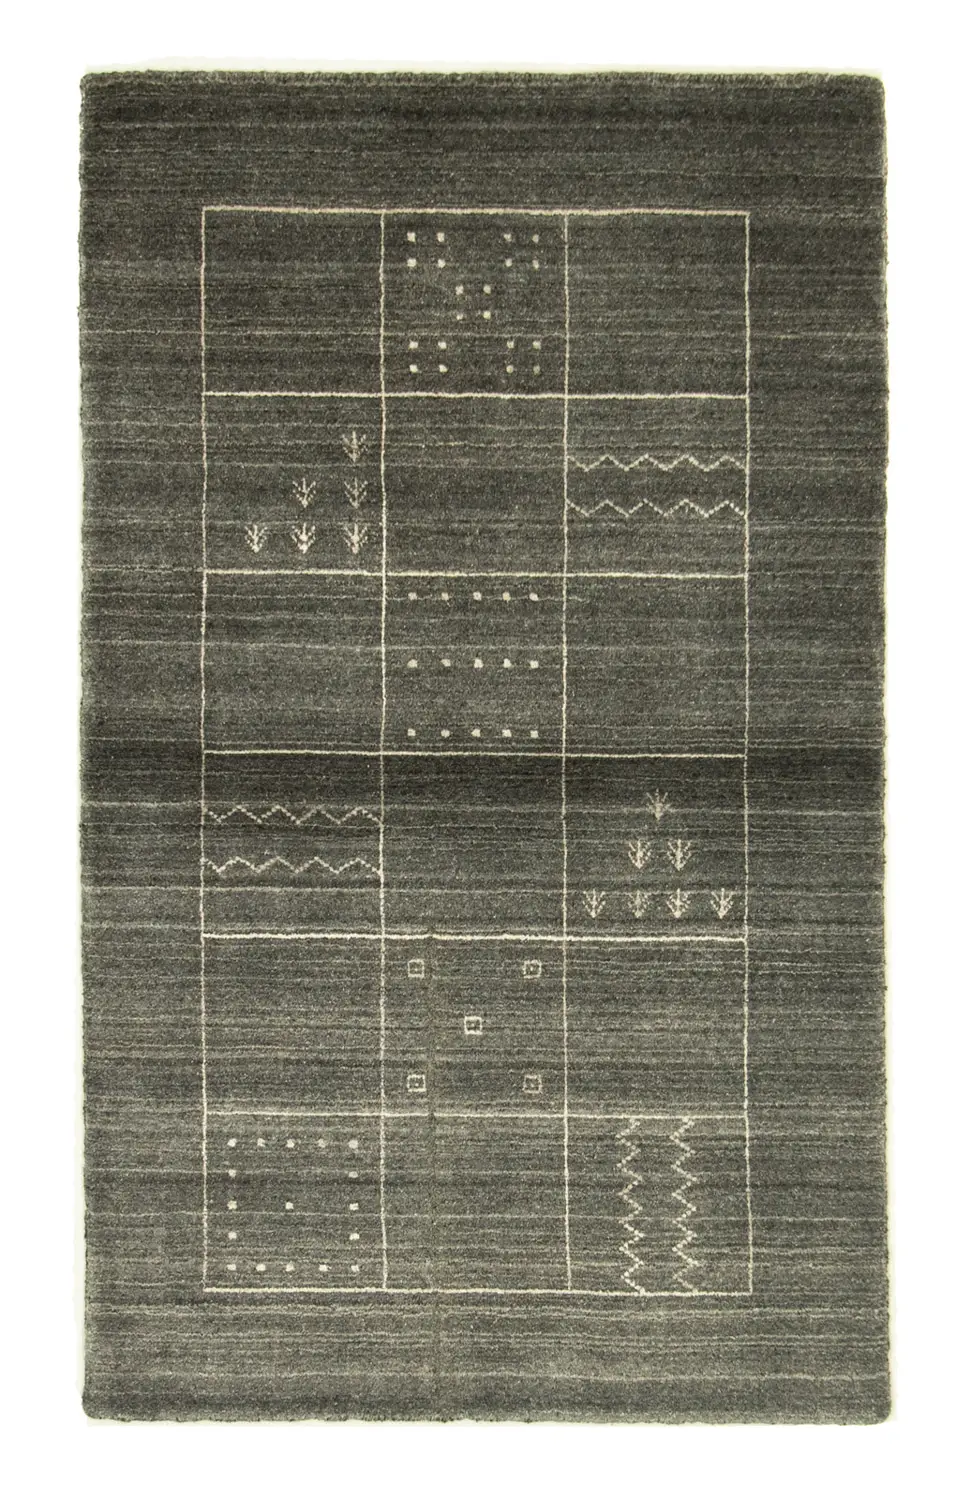 Nepal Teppich minzgr眉n - 160 90 x - cm